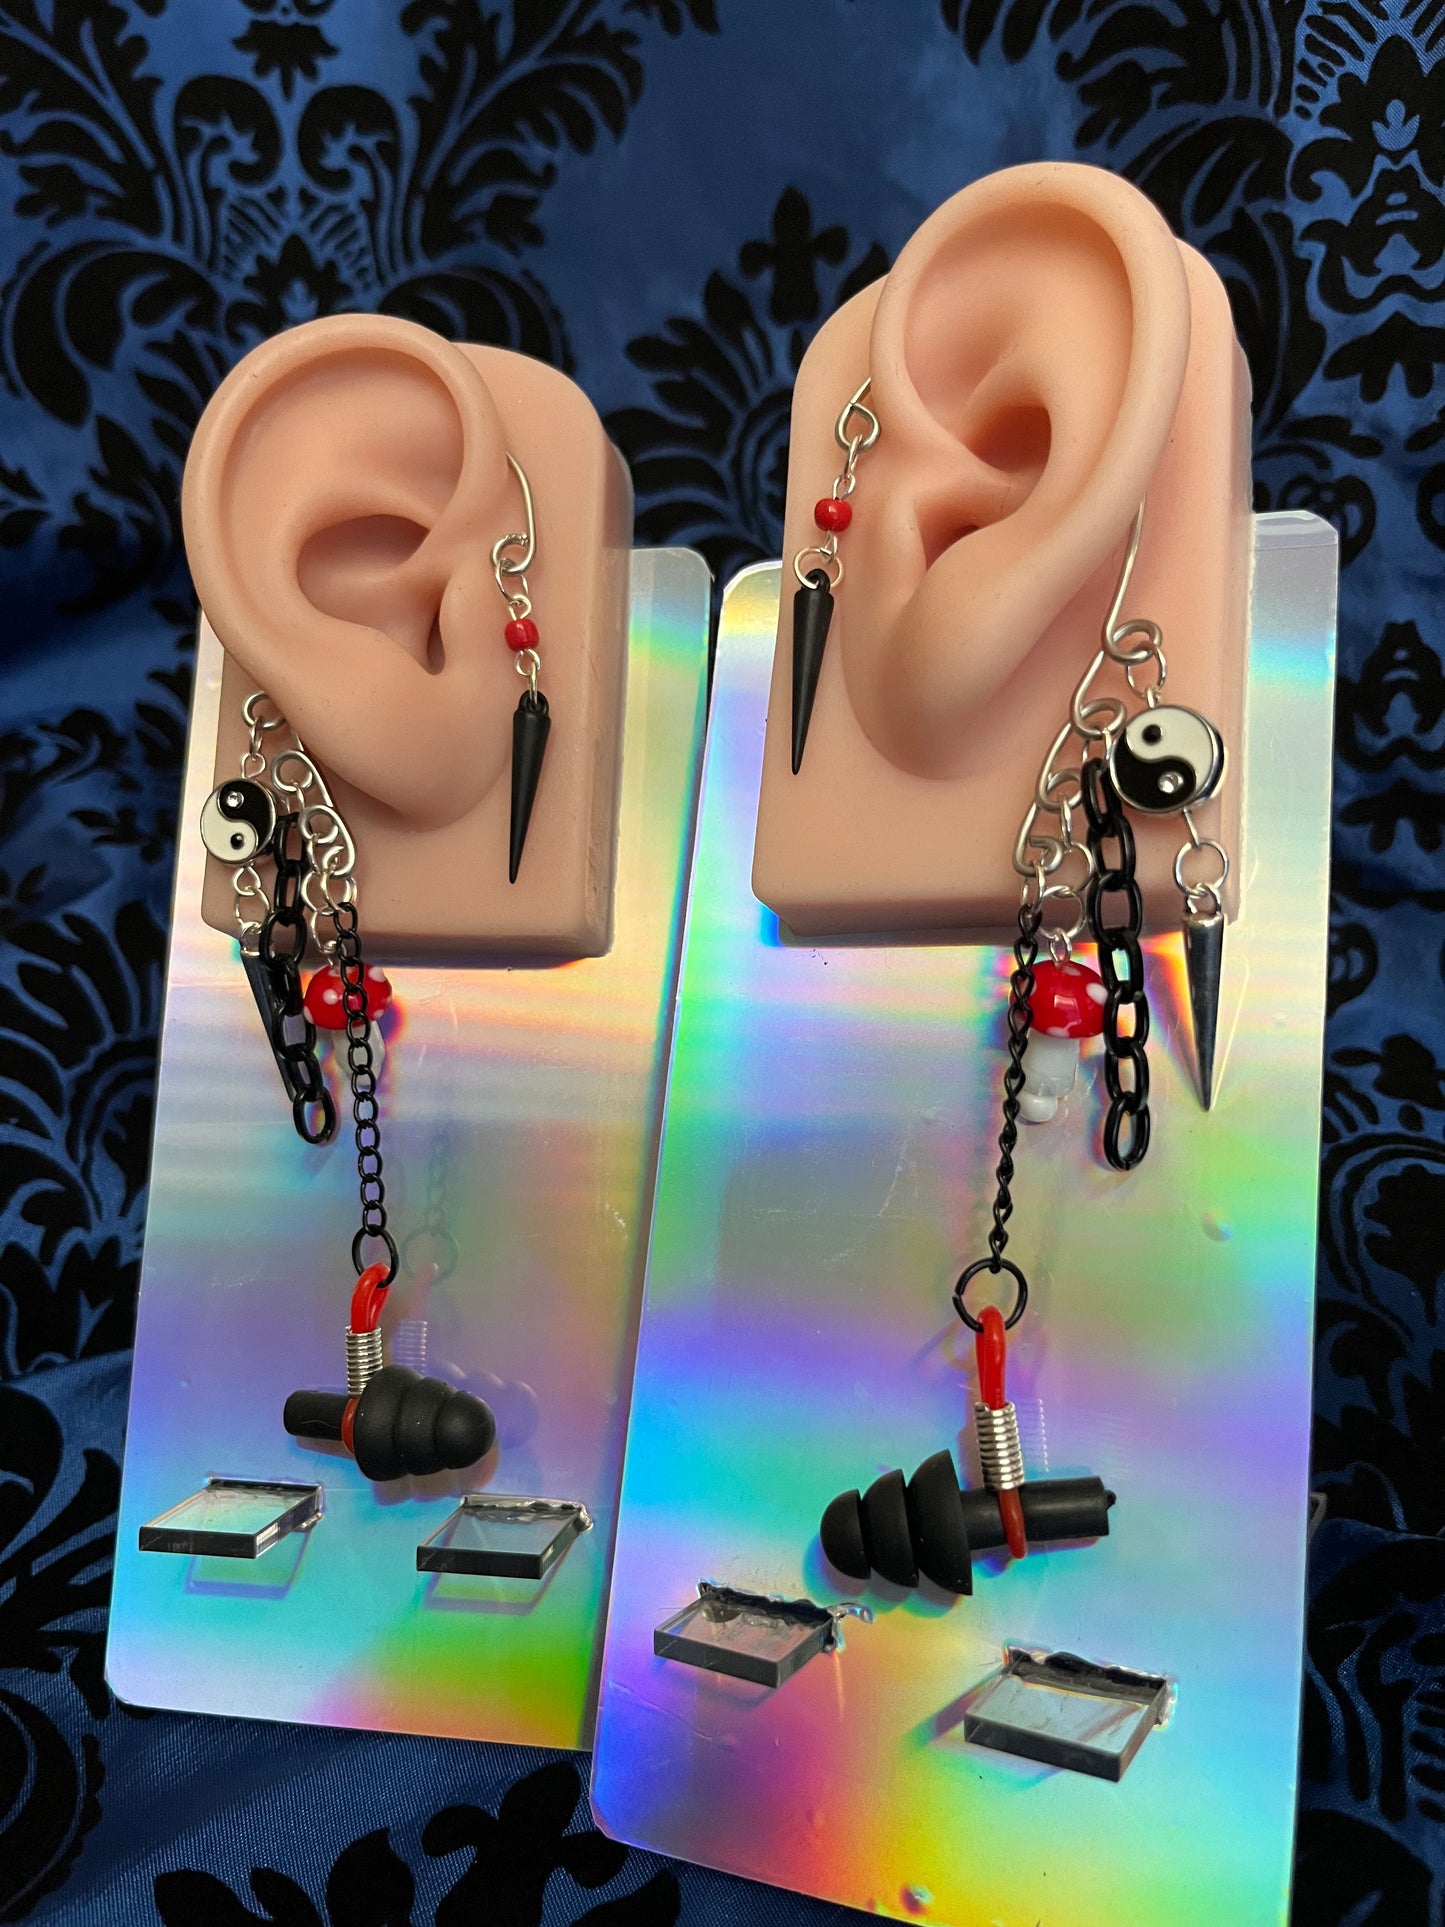 Ear Plug Ear Cuff Set - Red and Black